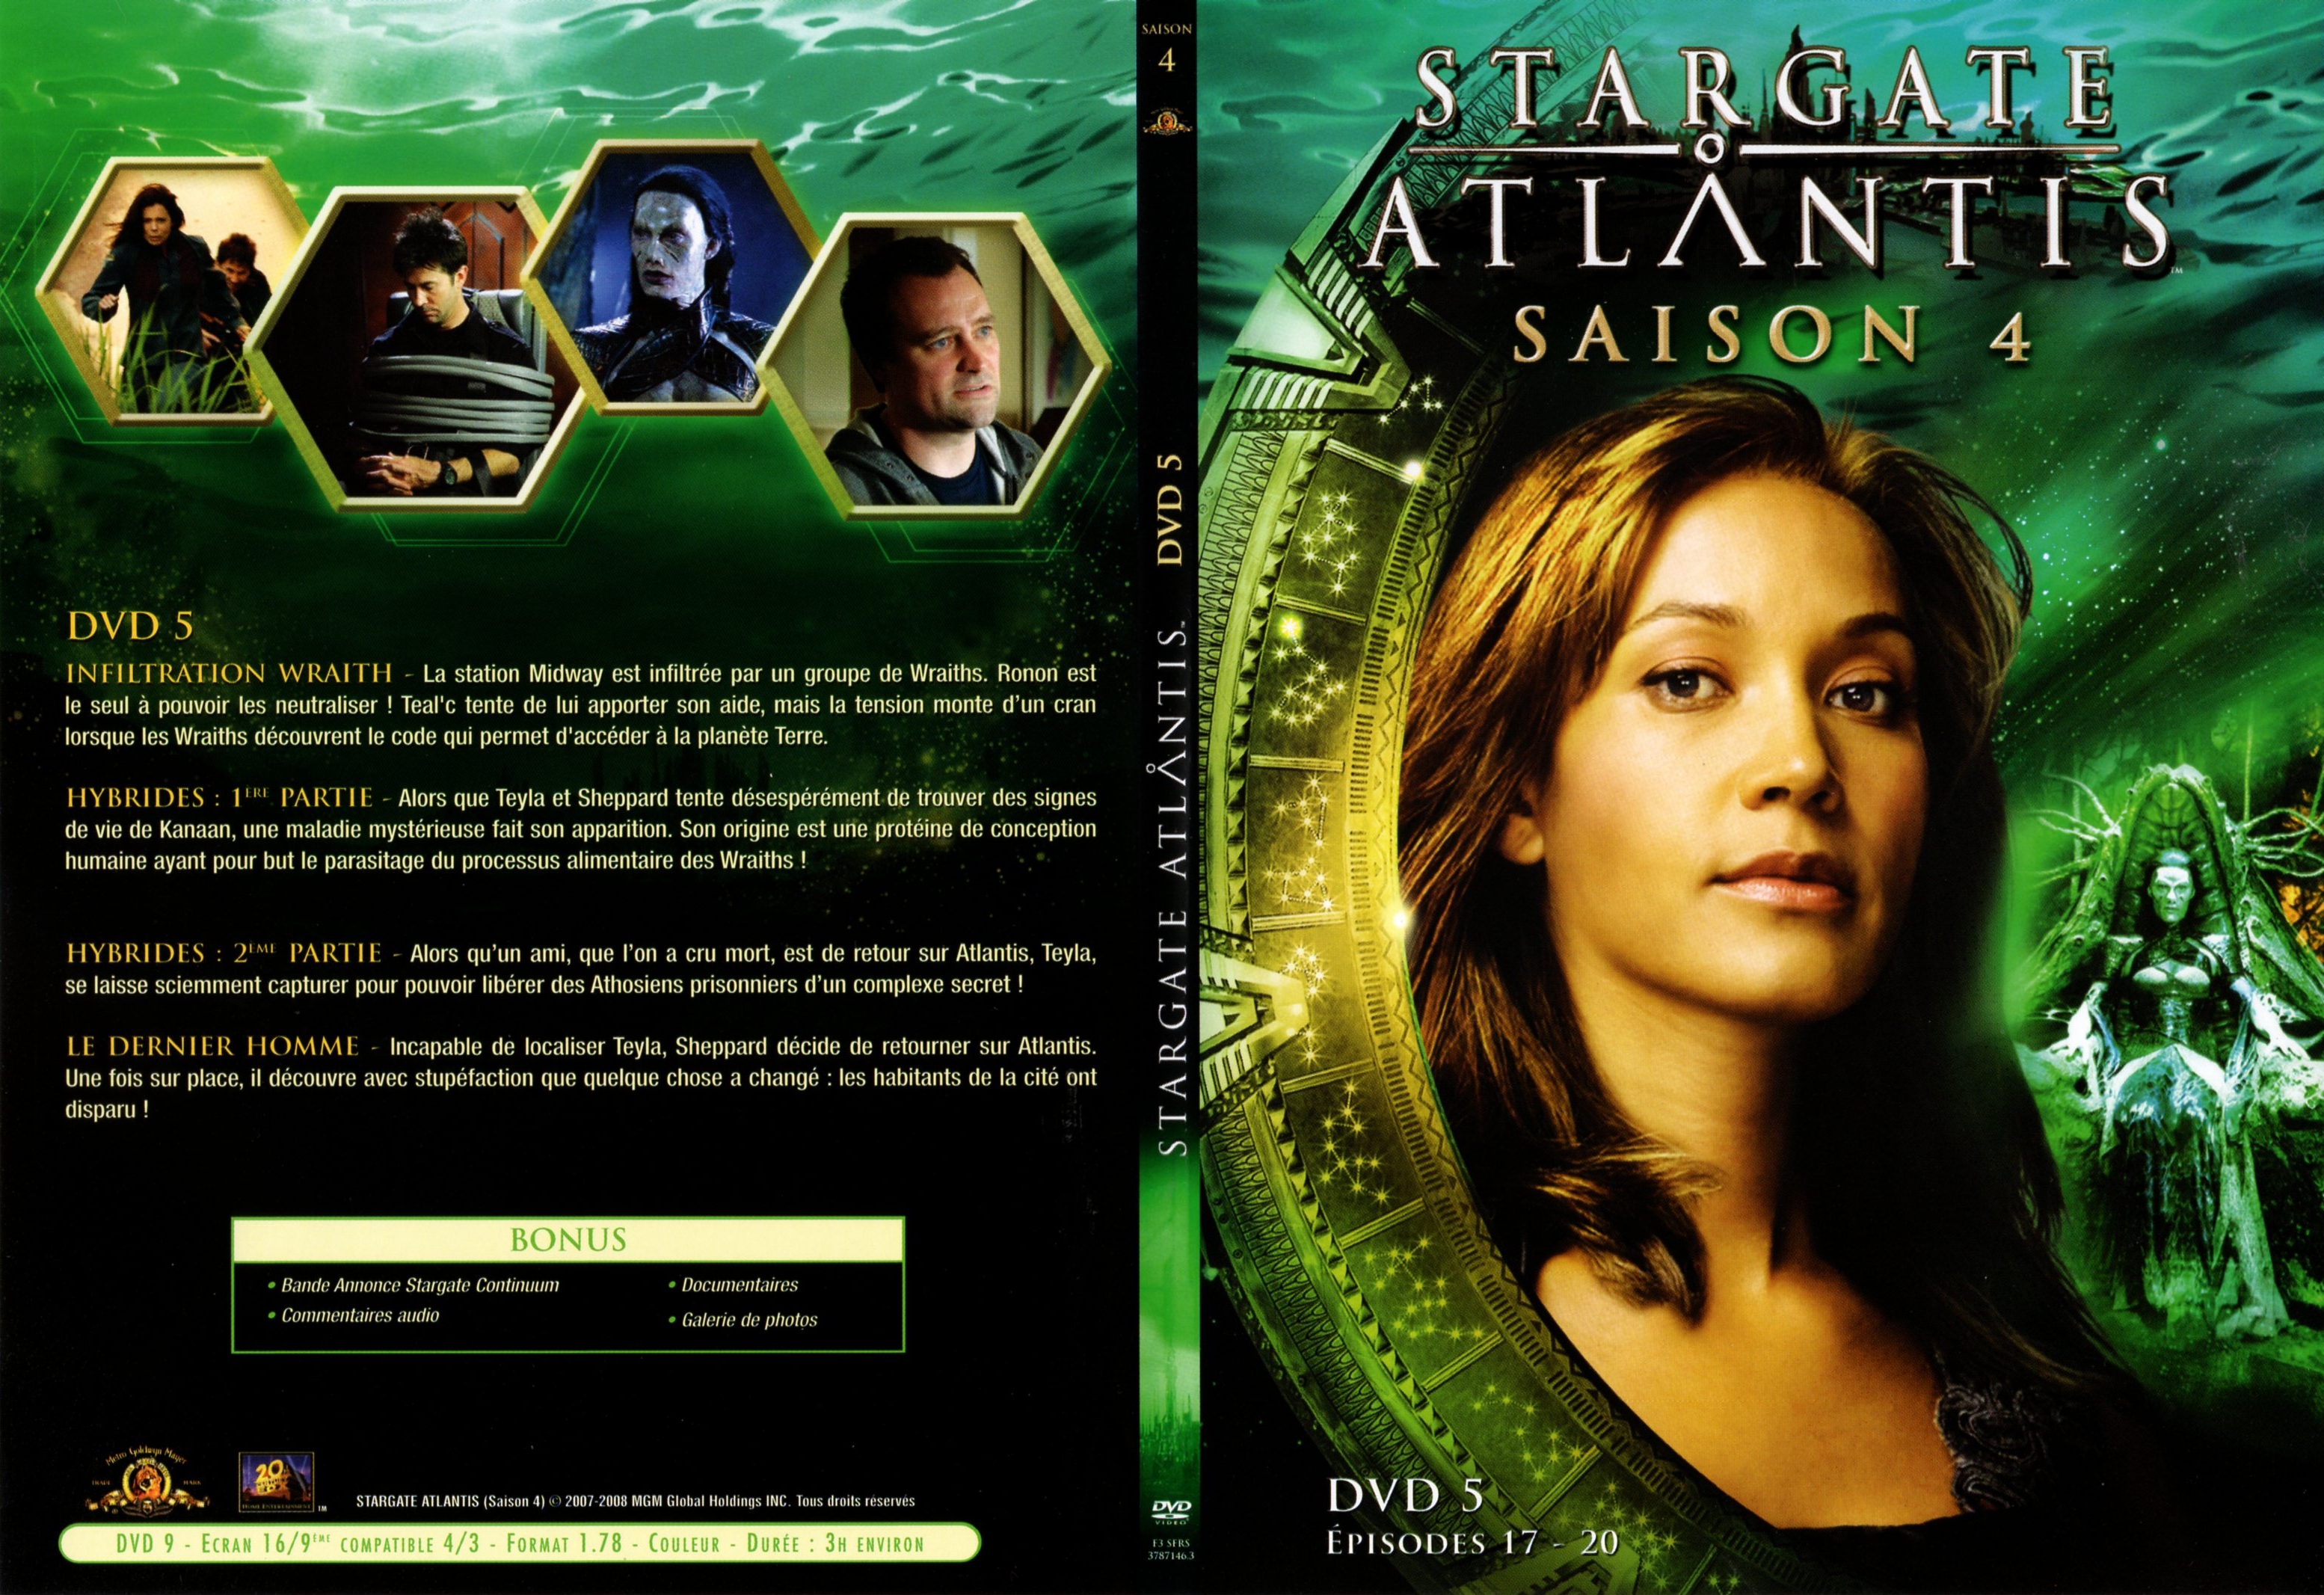 Jaquette DVD Stargate atlantis saison 4 DVD 3